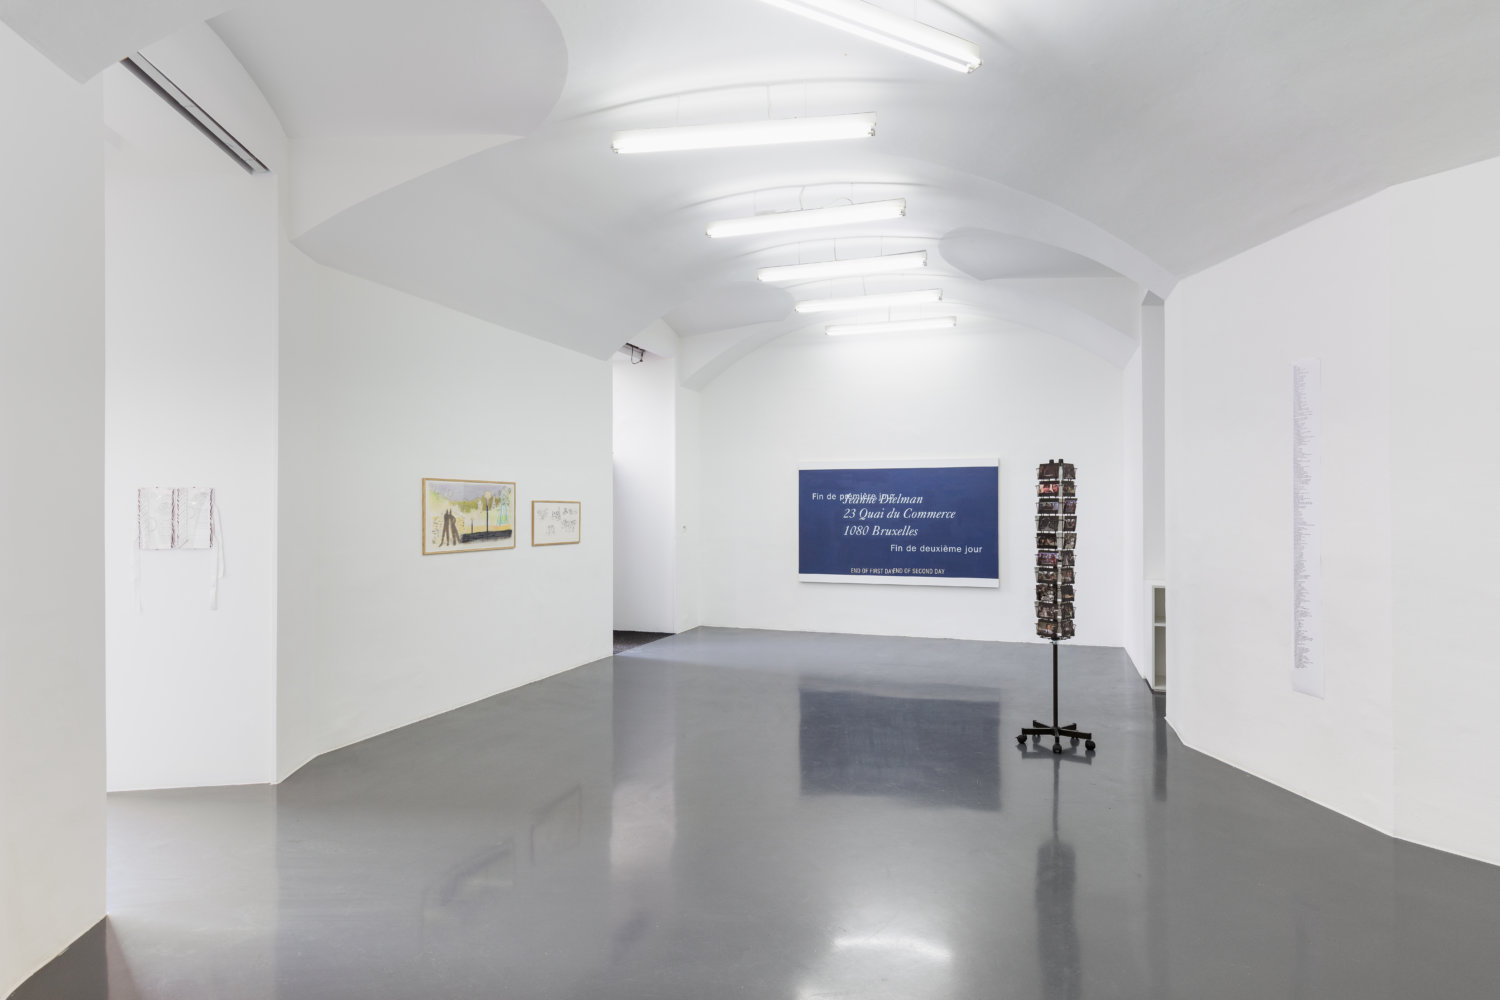 Installationsansicht "Instinct Chatter" bei Emanuel Layr, 5. März - 10. April 2021 Wien mit Werken vin Lise Soskolne und Robin Waart